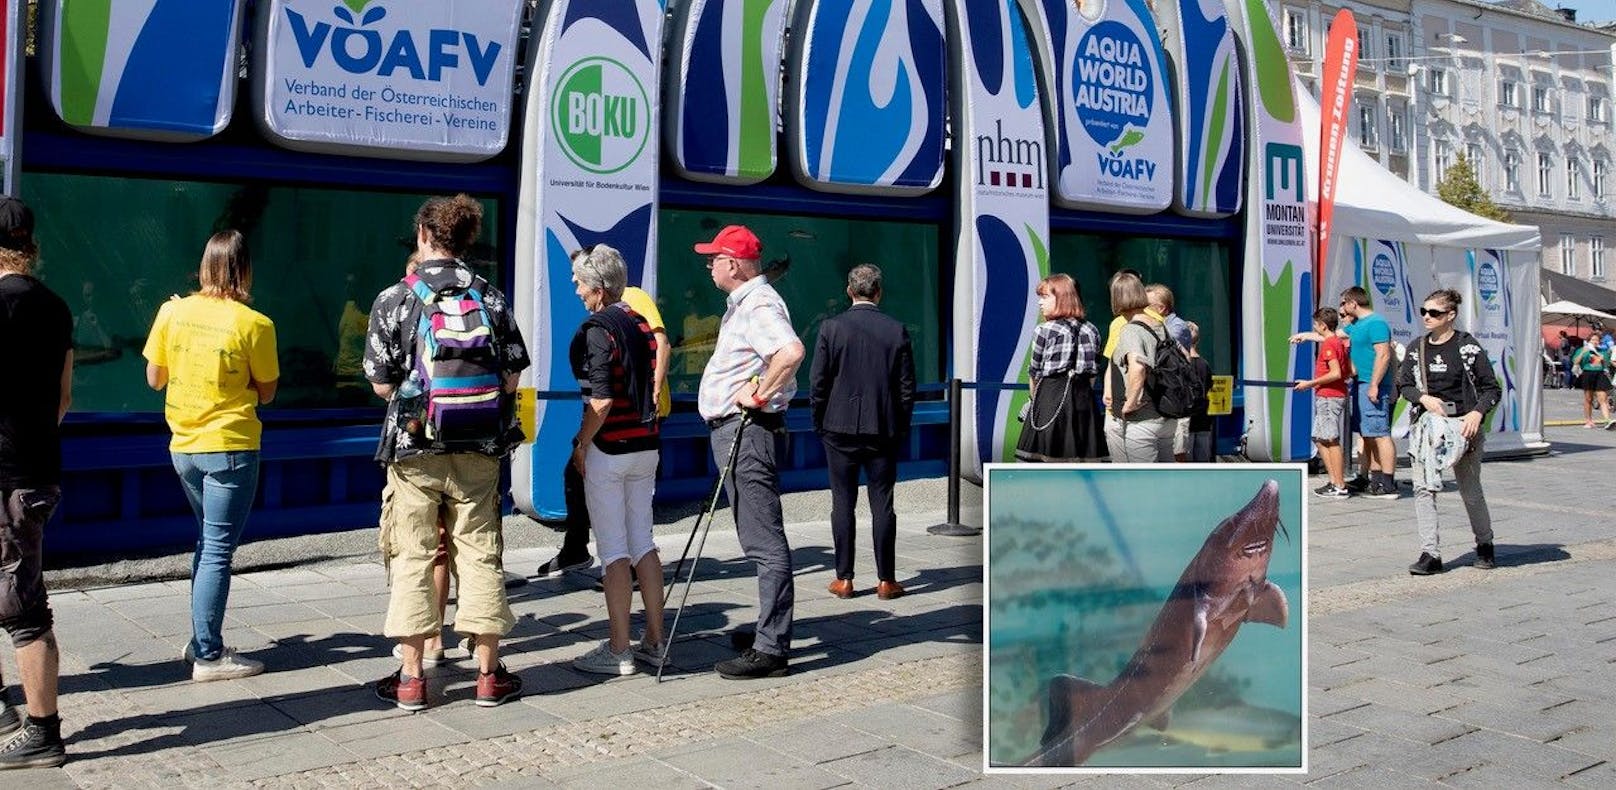 Das größte mobile Aquarium der Welt steht am Linzer Hauptplatz.